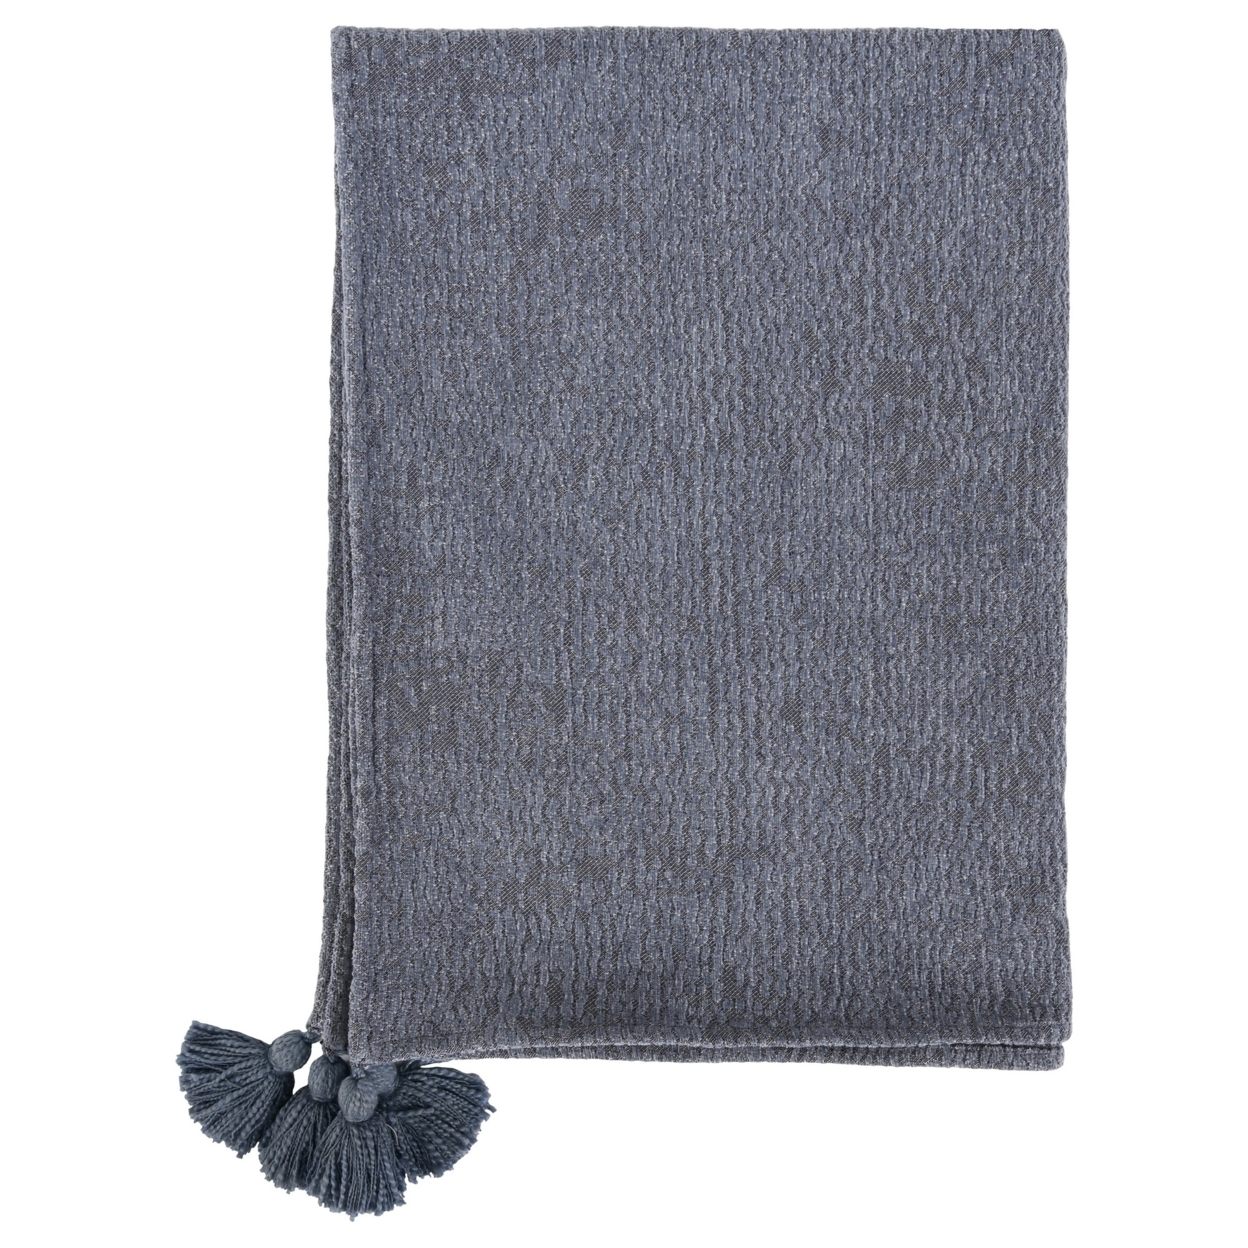 70 Inch Cotton Throw Blanket, Woven Textured Pattern, Tassels, Heather Gray, Saltoro Sherpi